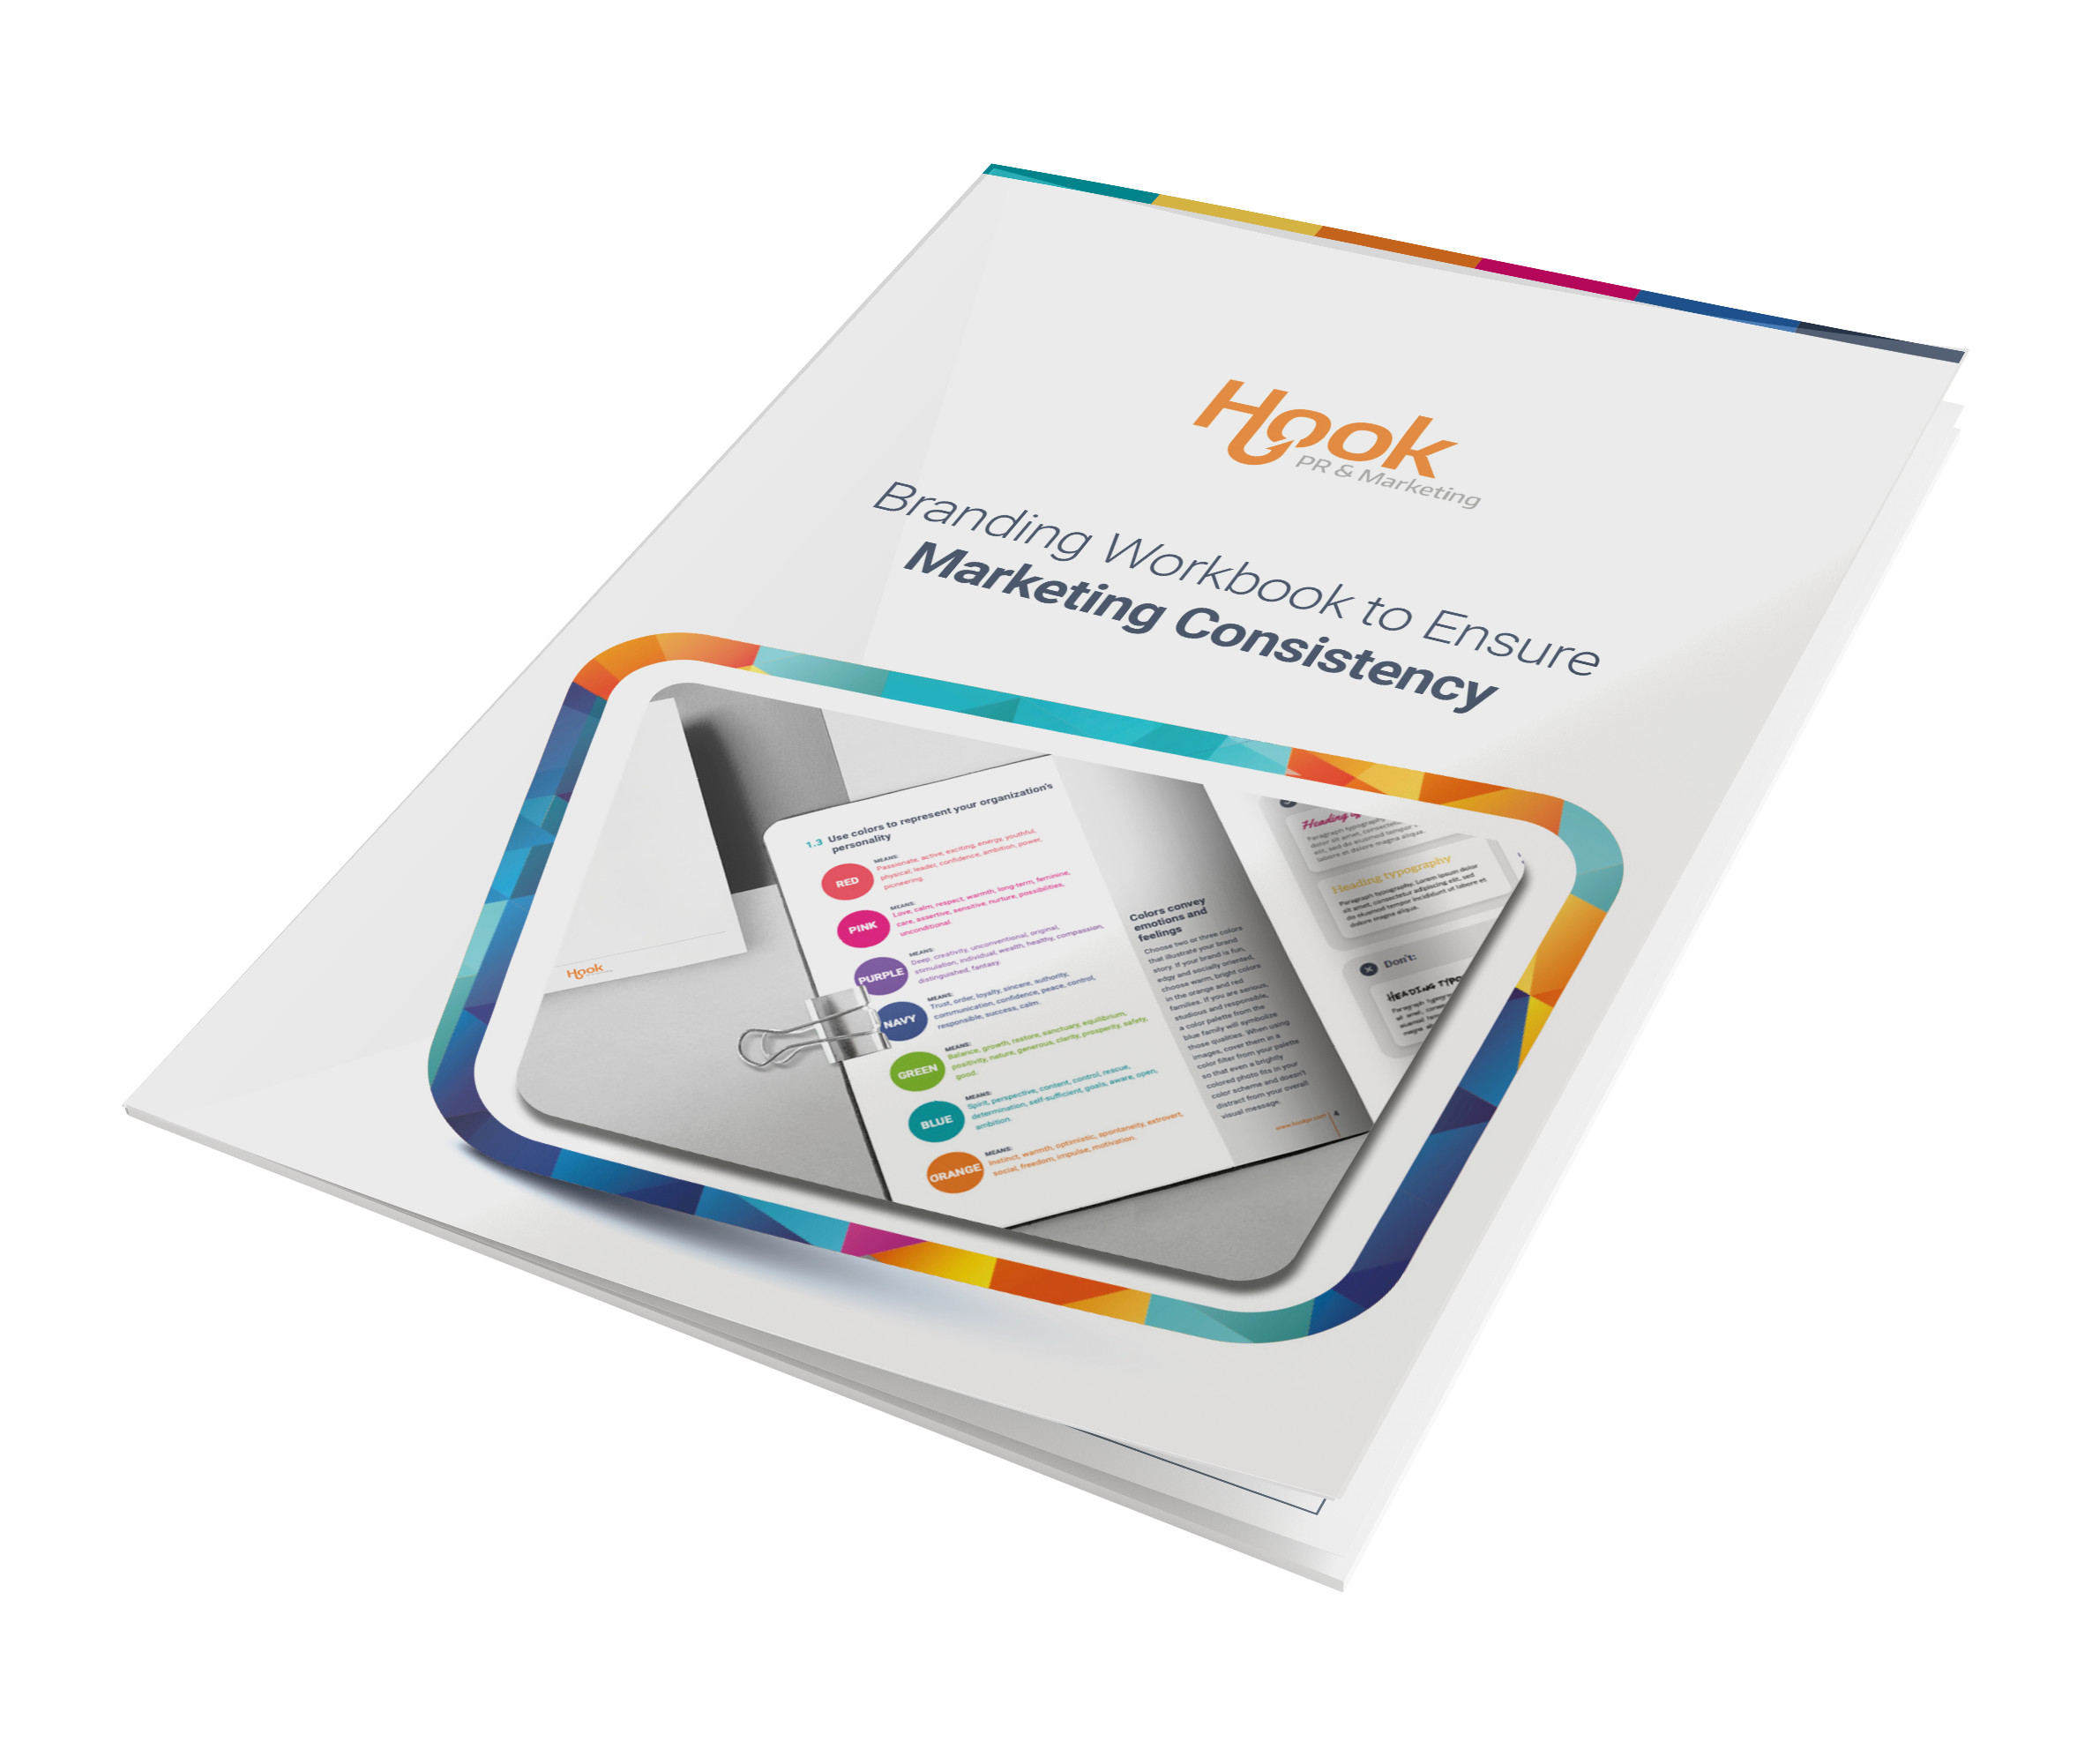 Branding Workbook to Ensure Marketing Consistency